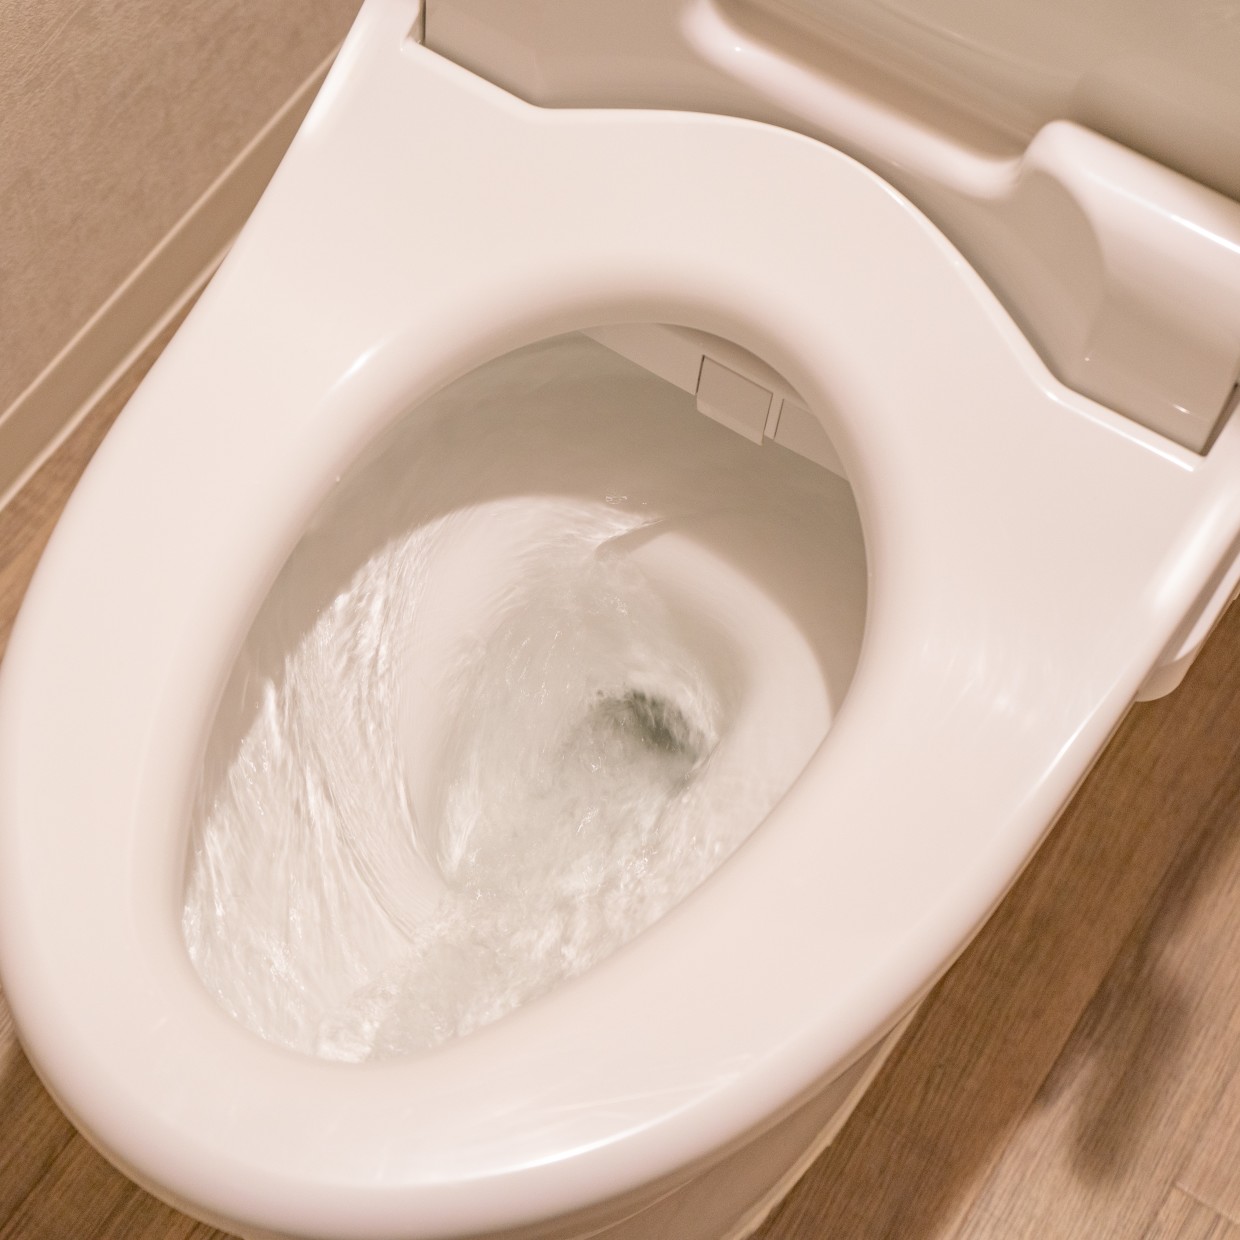  「トイレ」のニオイの原因。目には見えない“尿のハネ汚れ”をごっそり落とすかんたん掃除術 